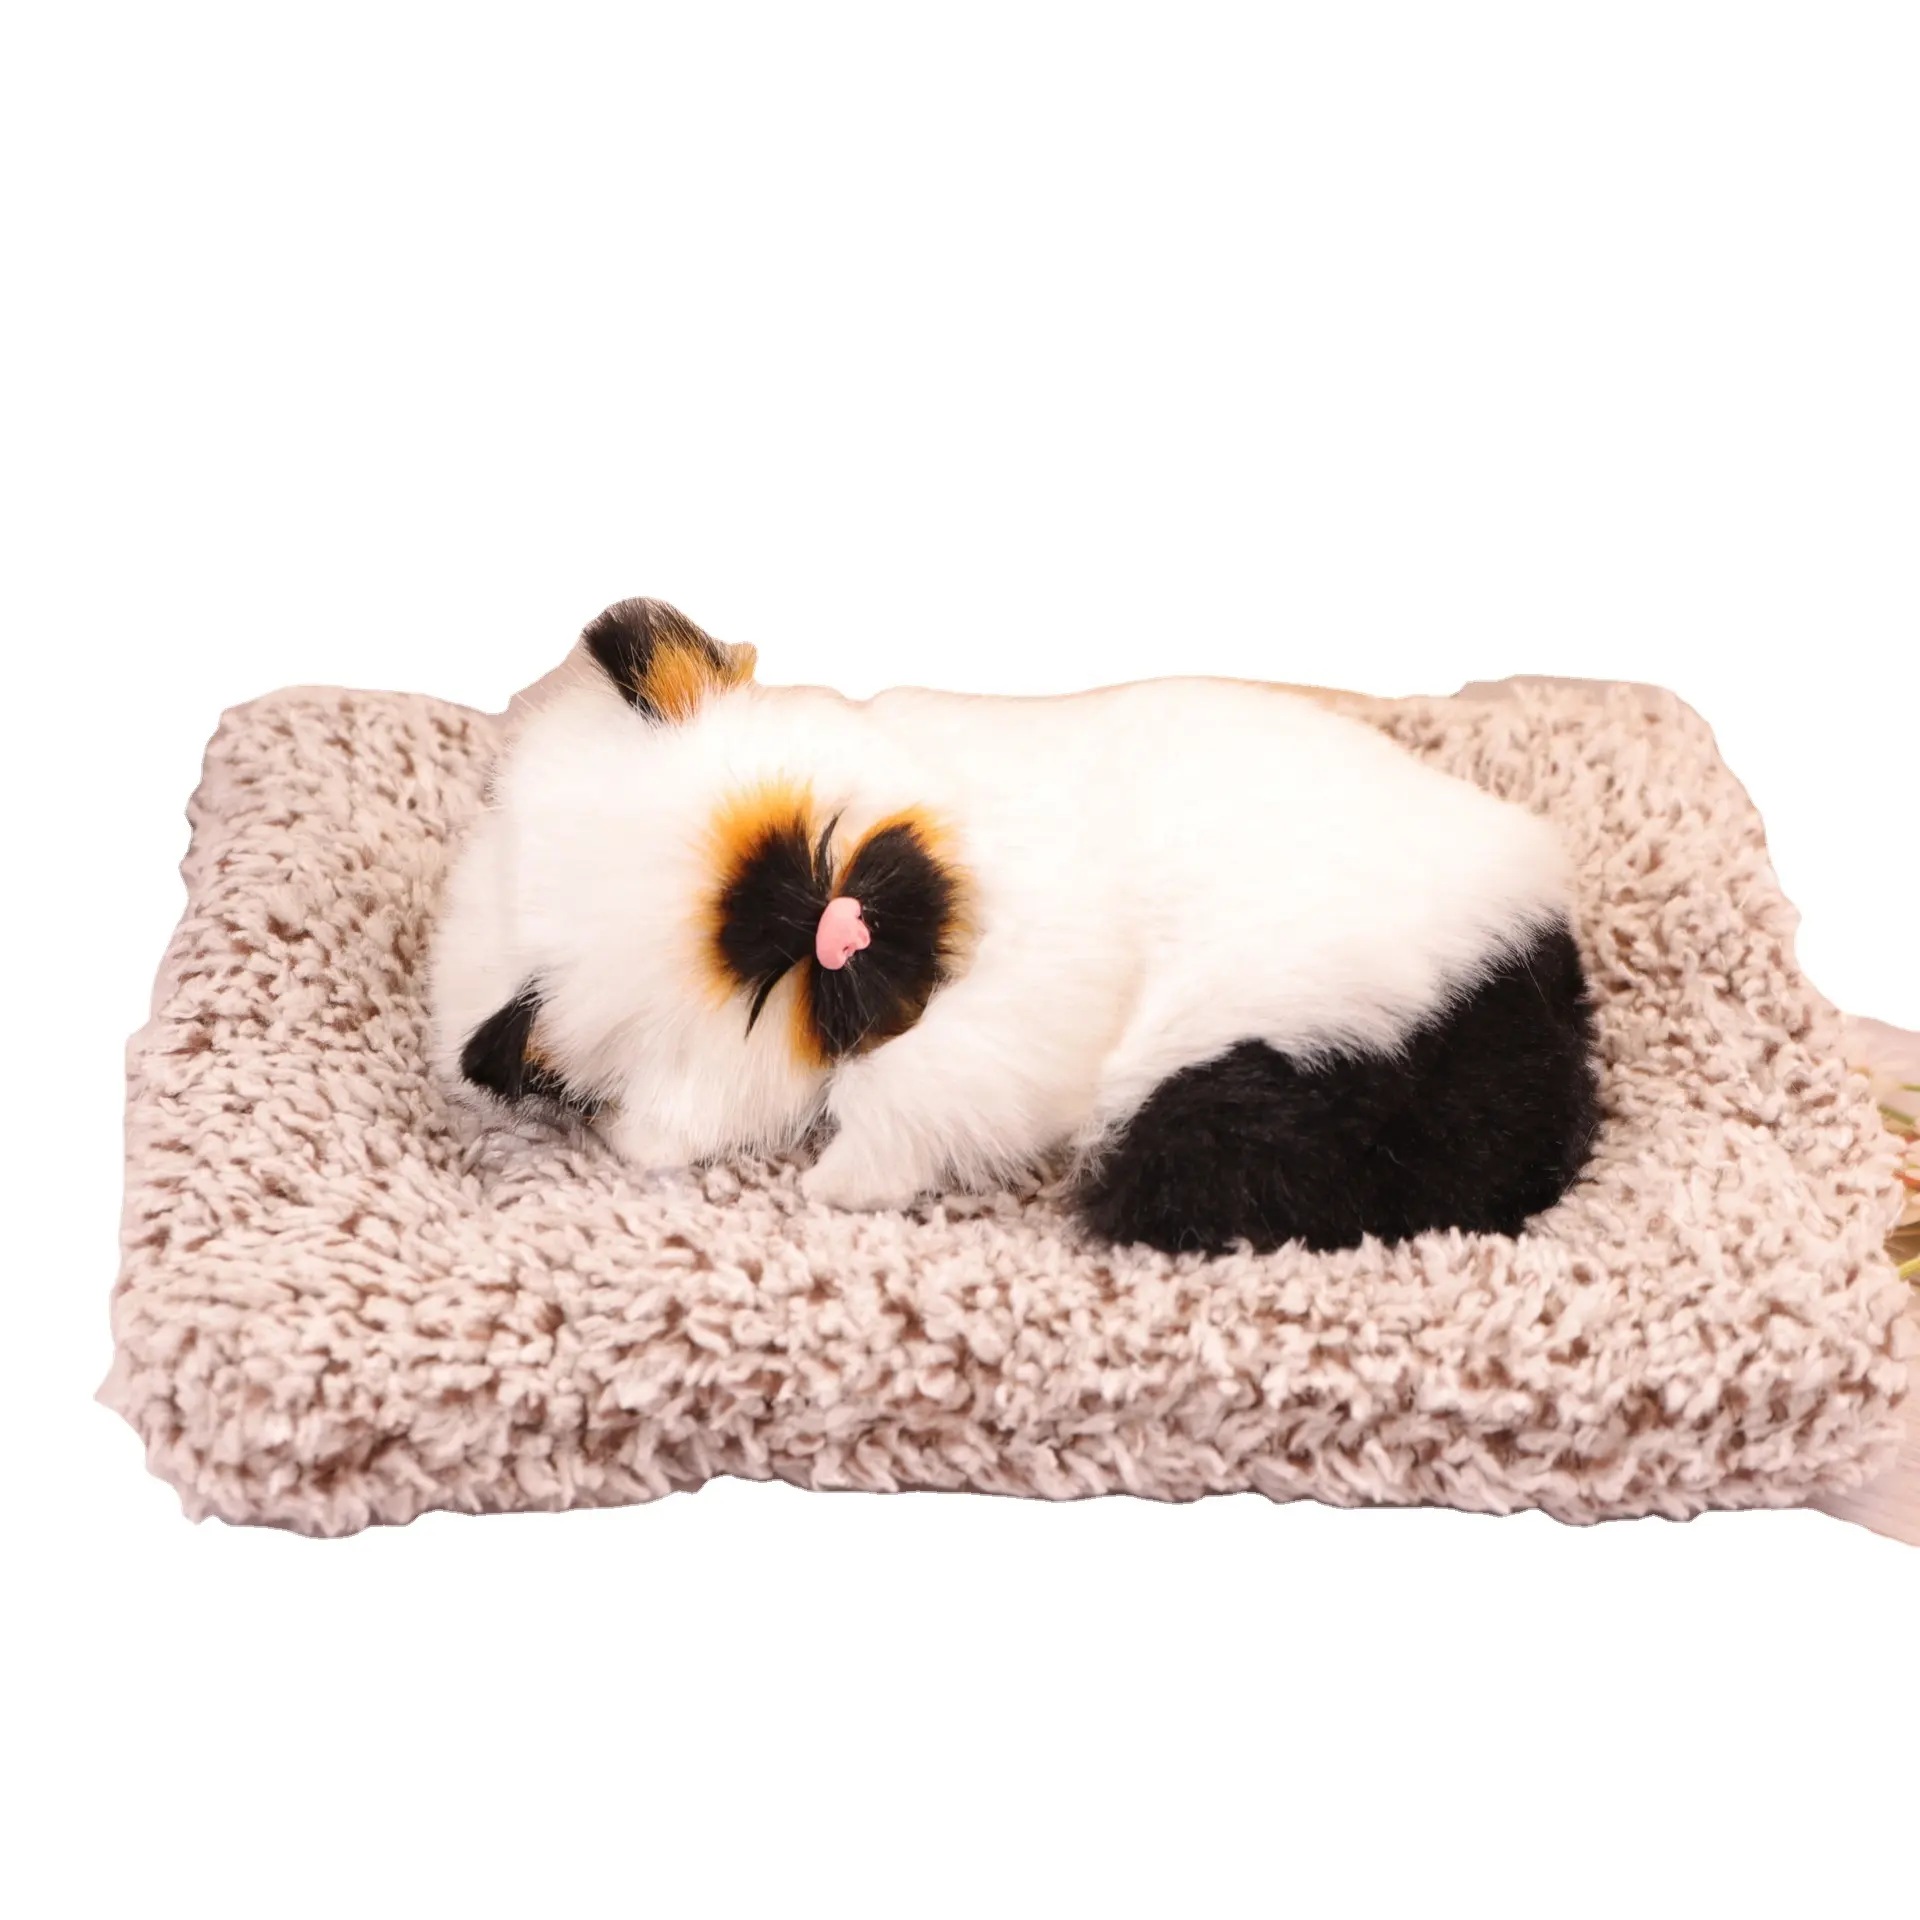 Simulado pelúcia dormir gato ornamentos, bambu carbono carro decoração, couro e peles artesanato, decorações para casa